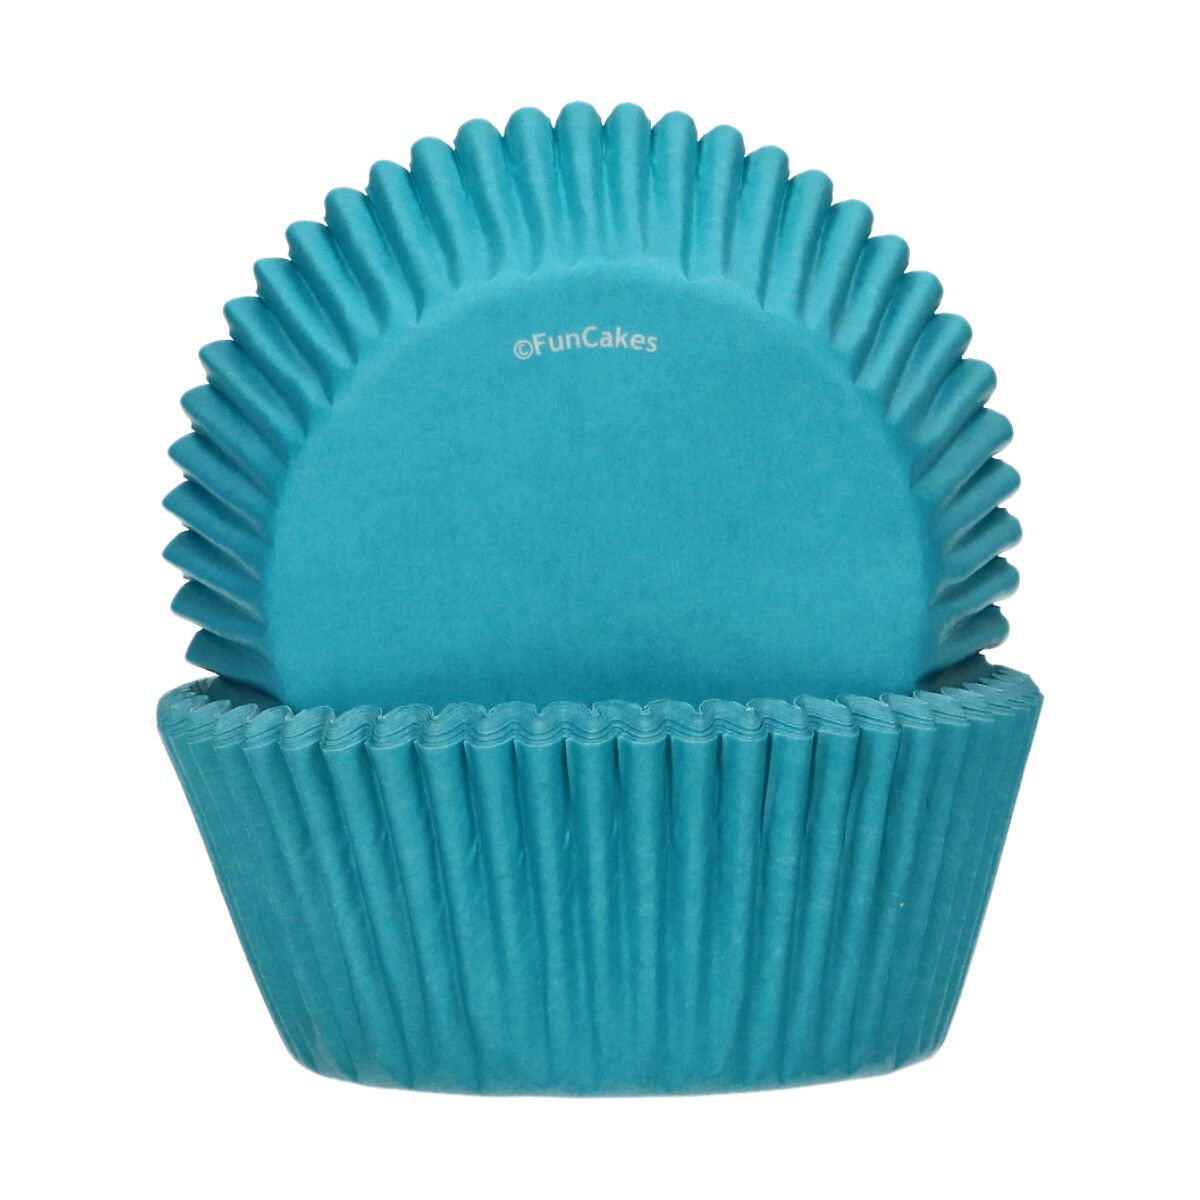 Caissettes à cupcakes Bleu turquoise Funcakes x48 - Perle Dorée